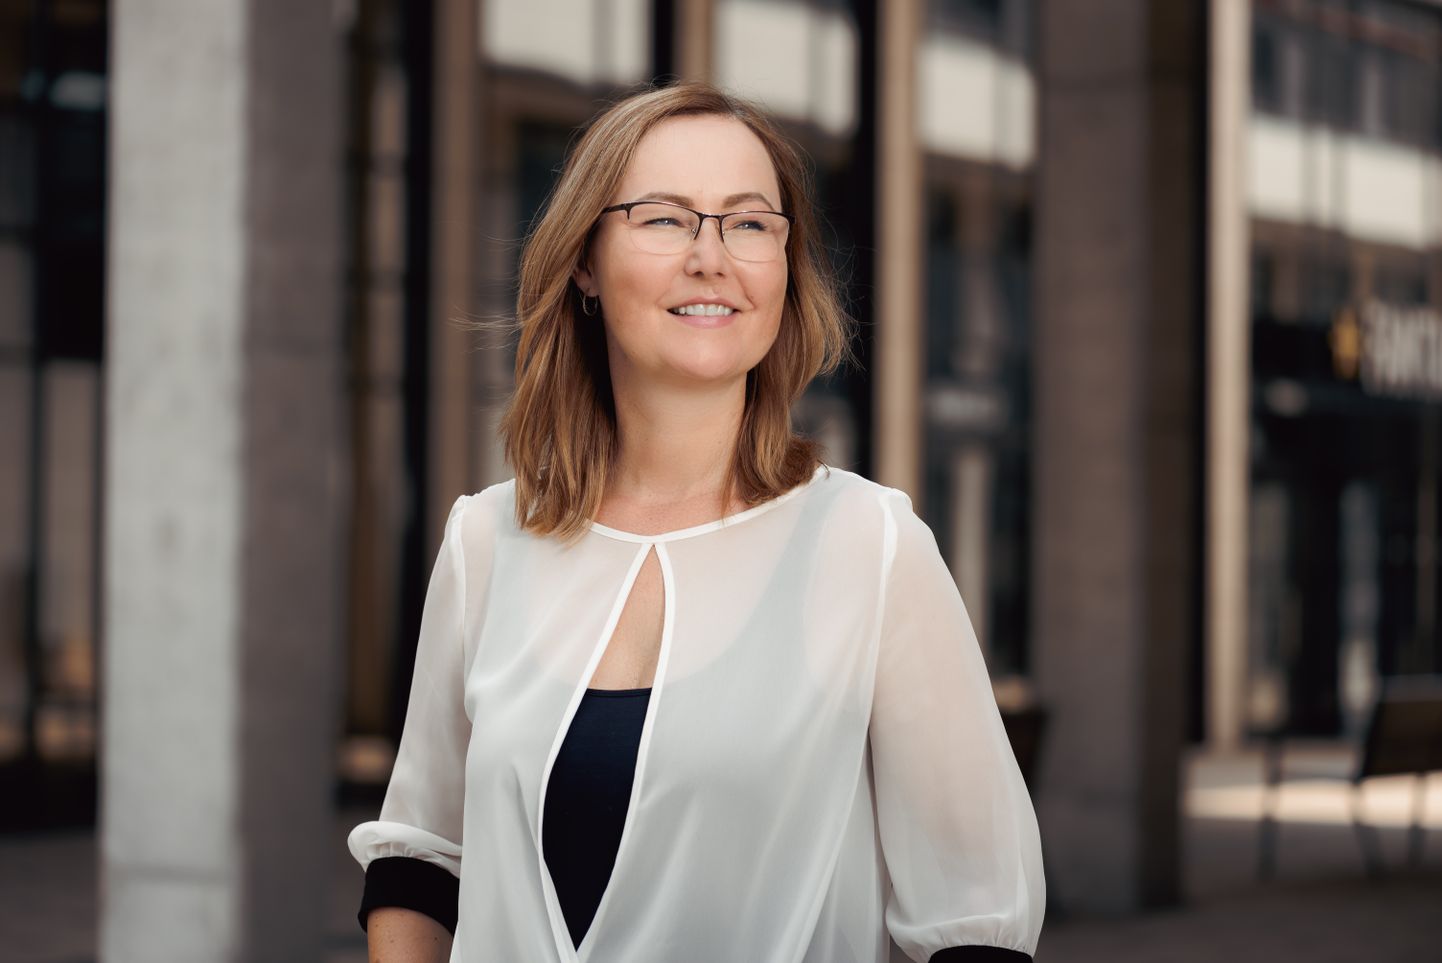 Alda Zeiļa, "Accenture" biznesa pārvaldes nodaļas vadītāja Baltijā